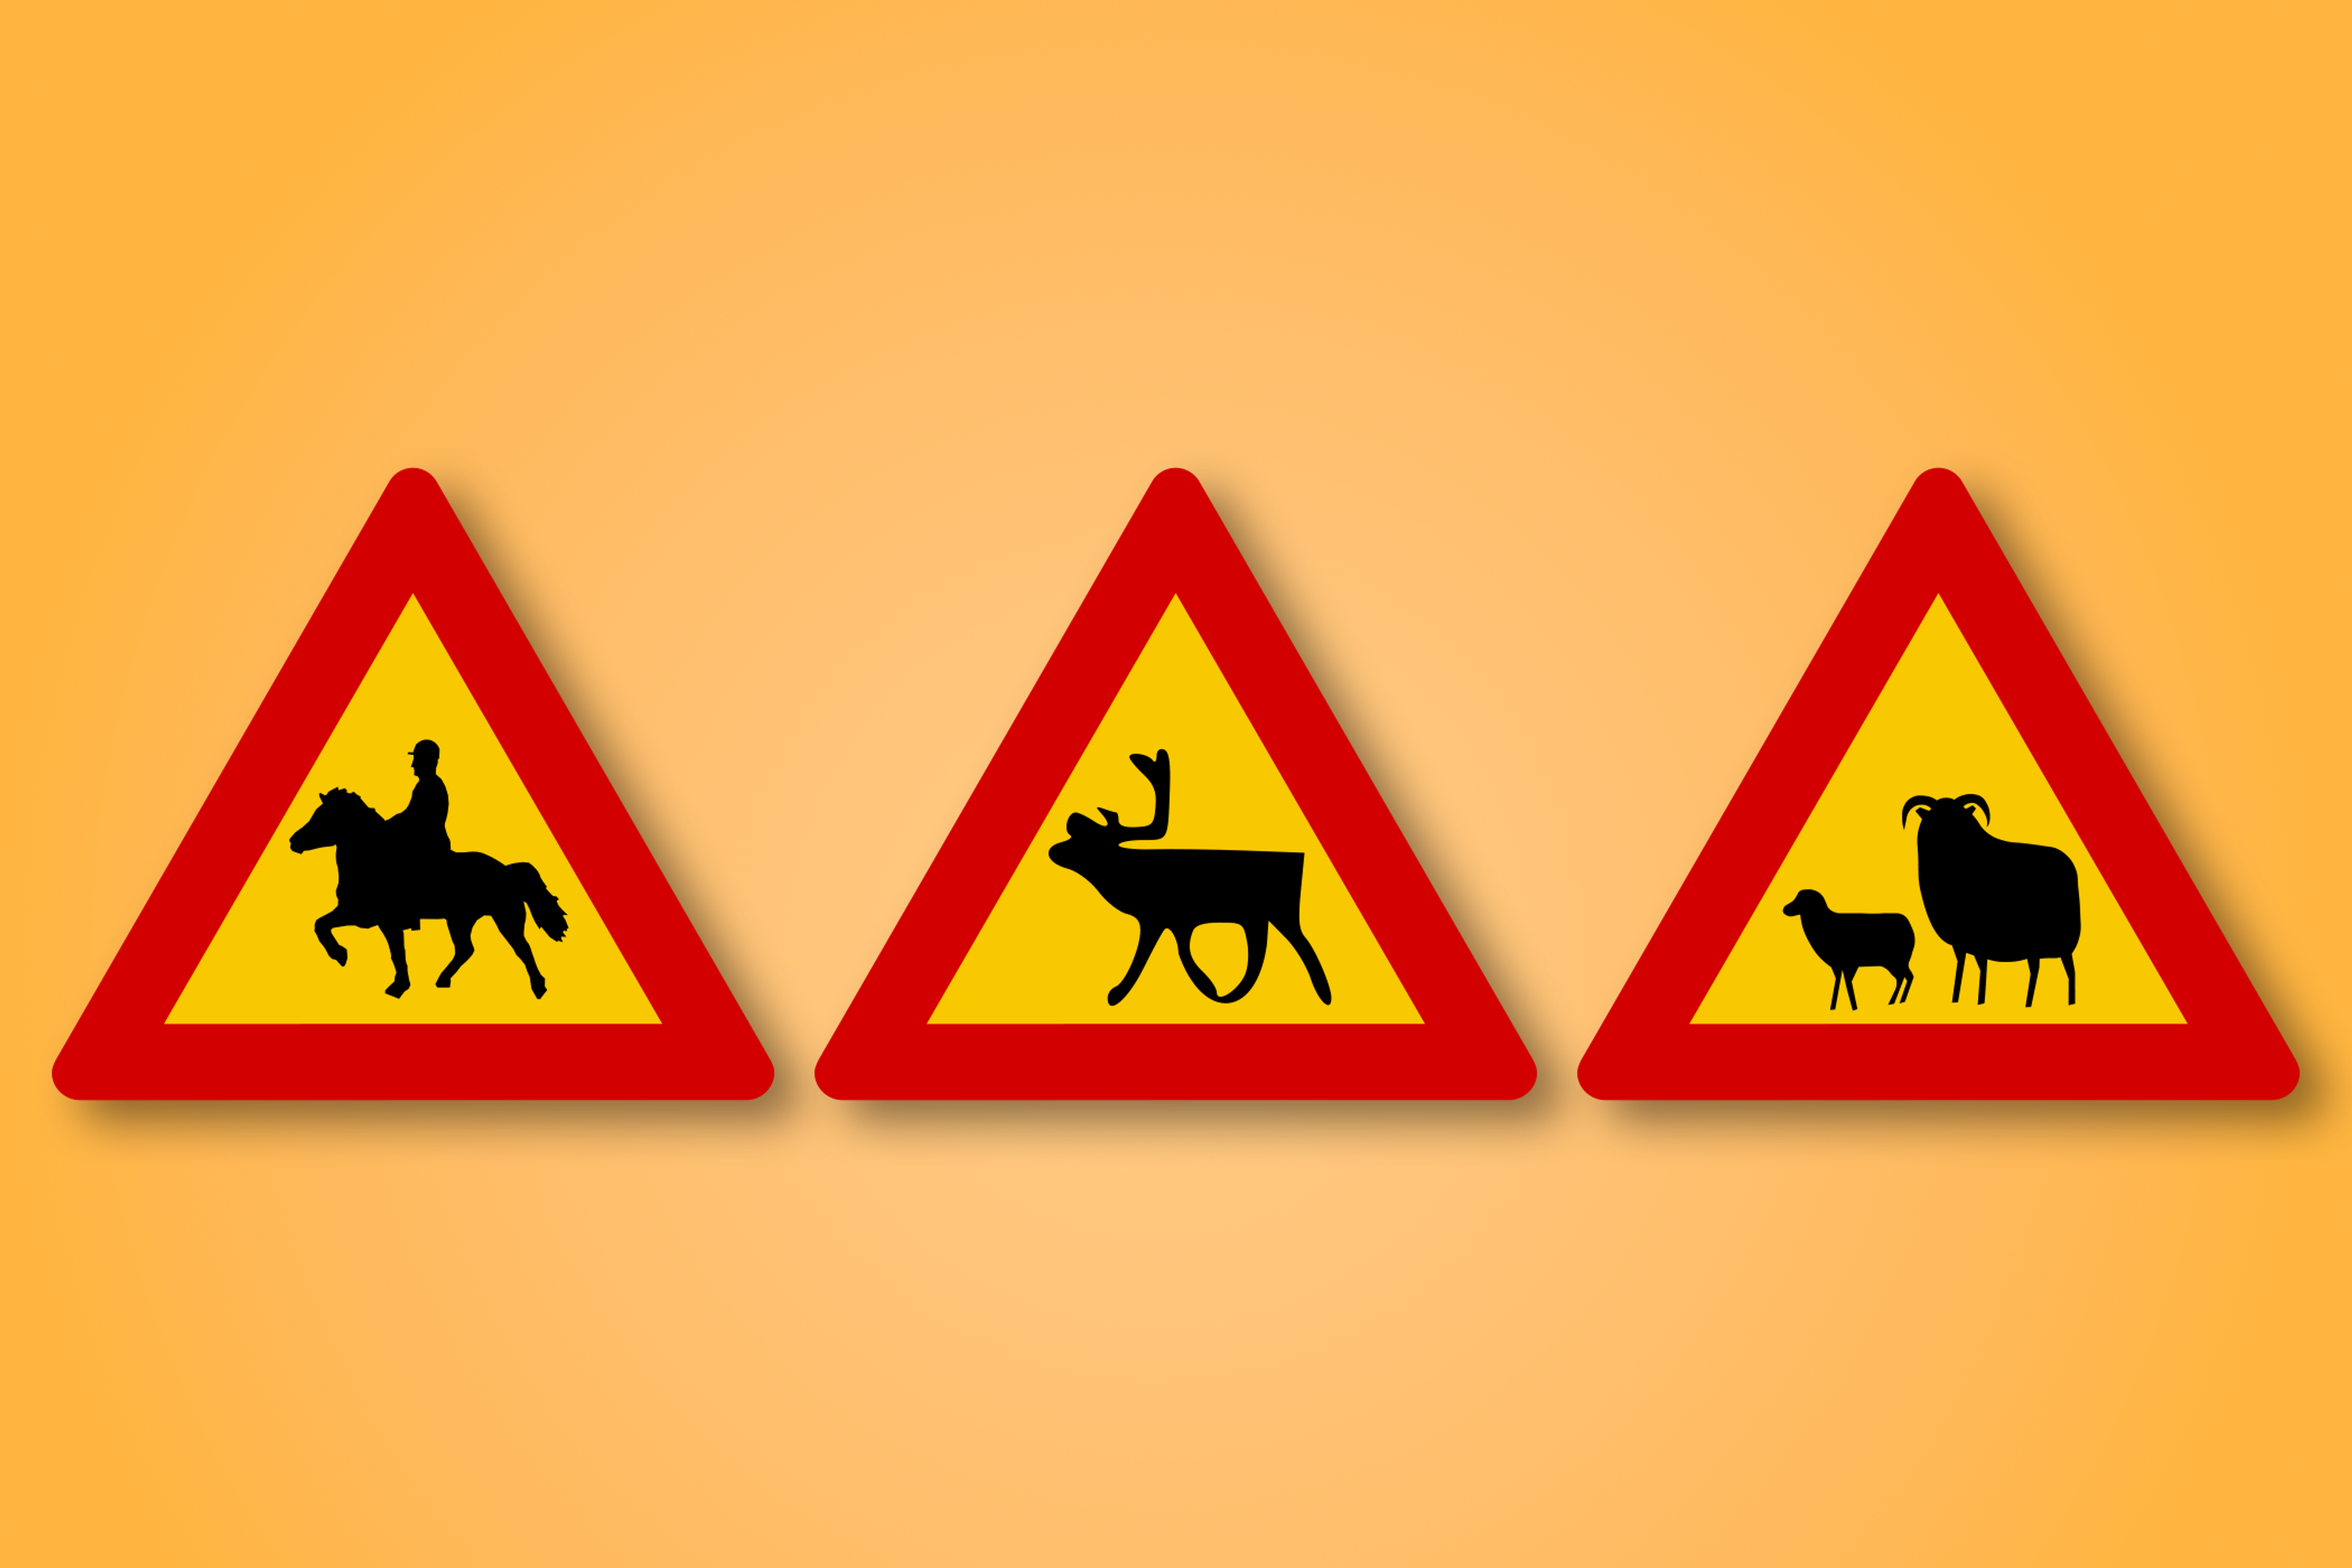 一块红色和黄色的三角形路标，中间有动物的图标。这个路标表示前方有动物穿越道路。